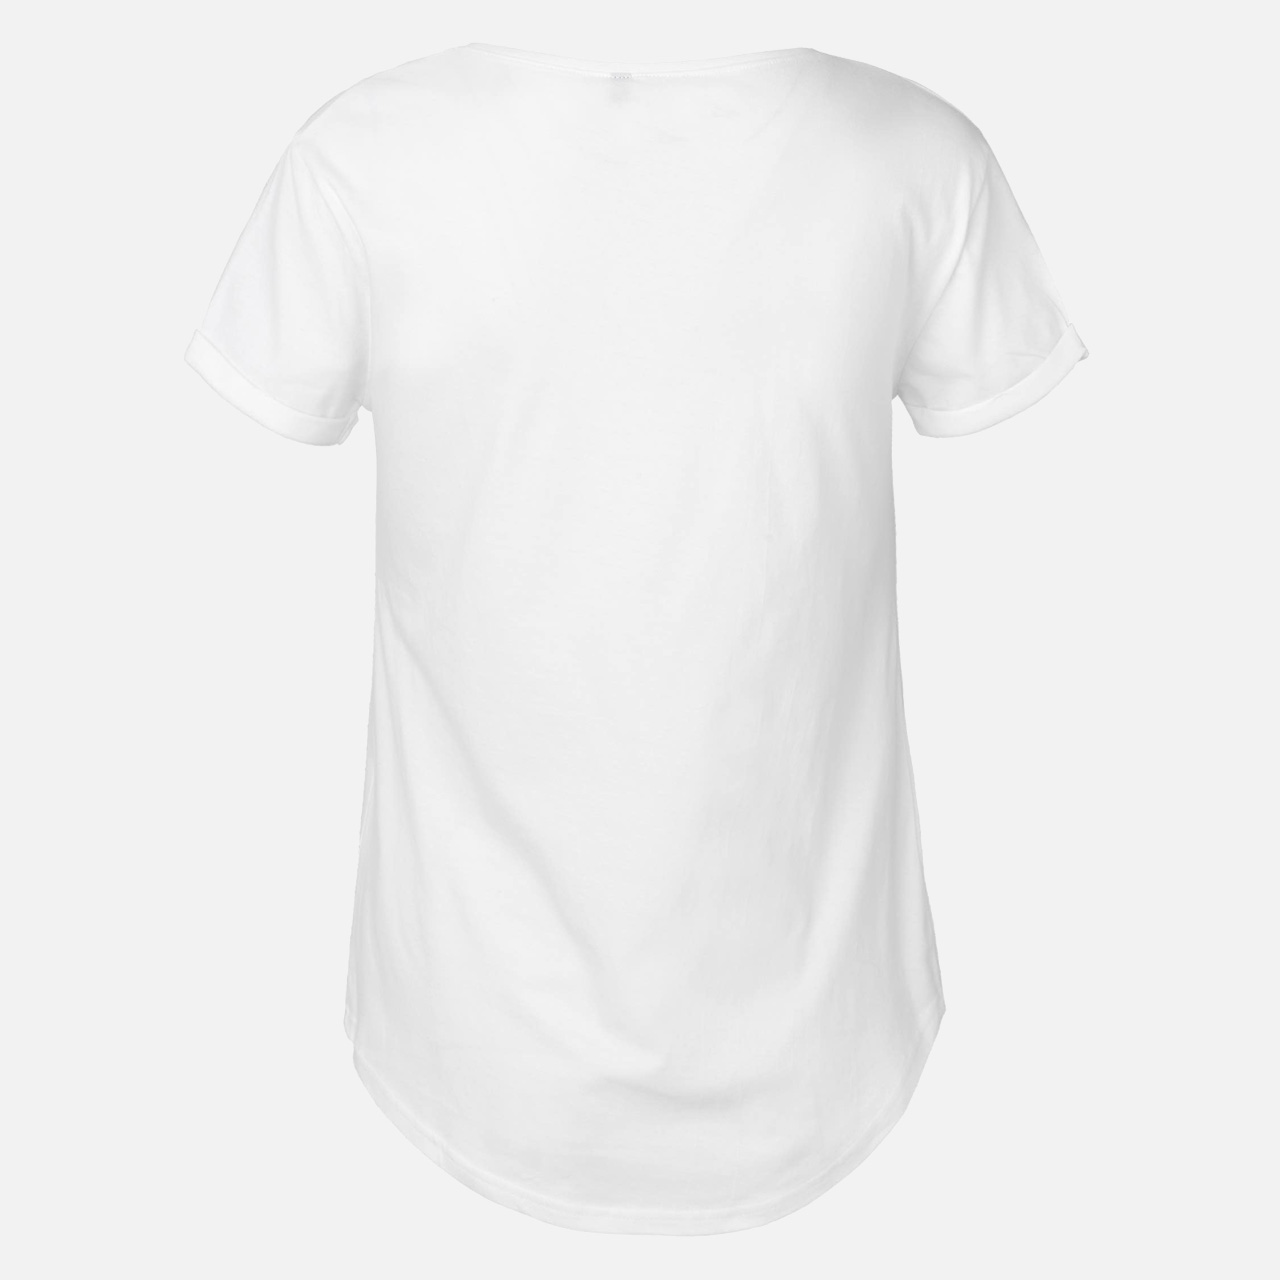 Doppelpack Ladies Roll Up Sleeve T-Shirt - Weiß / Schwarz 2XL Weiss / Schwarz